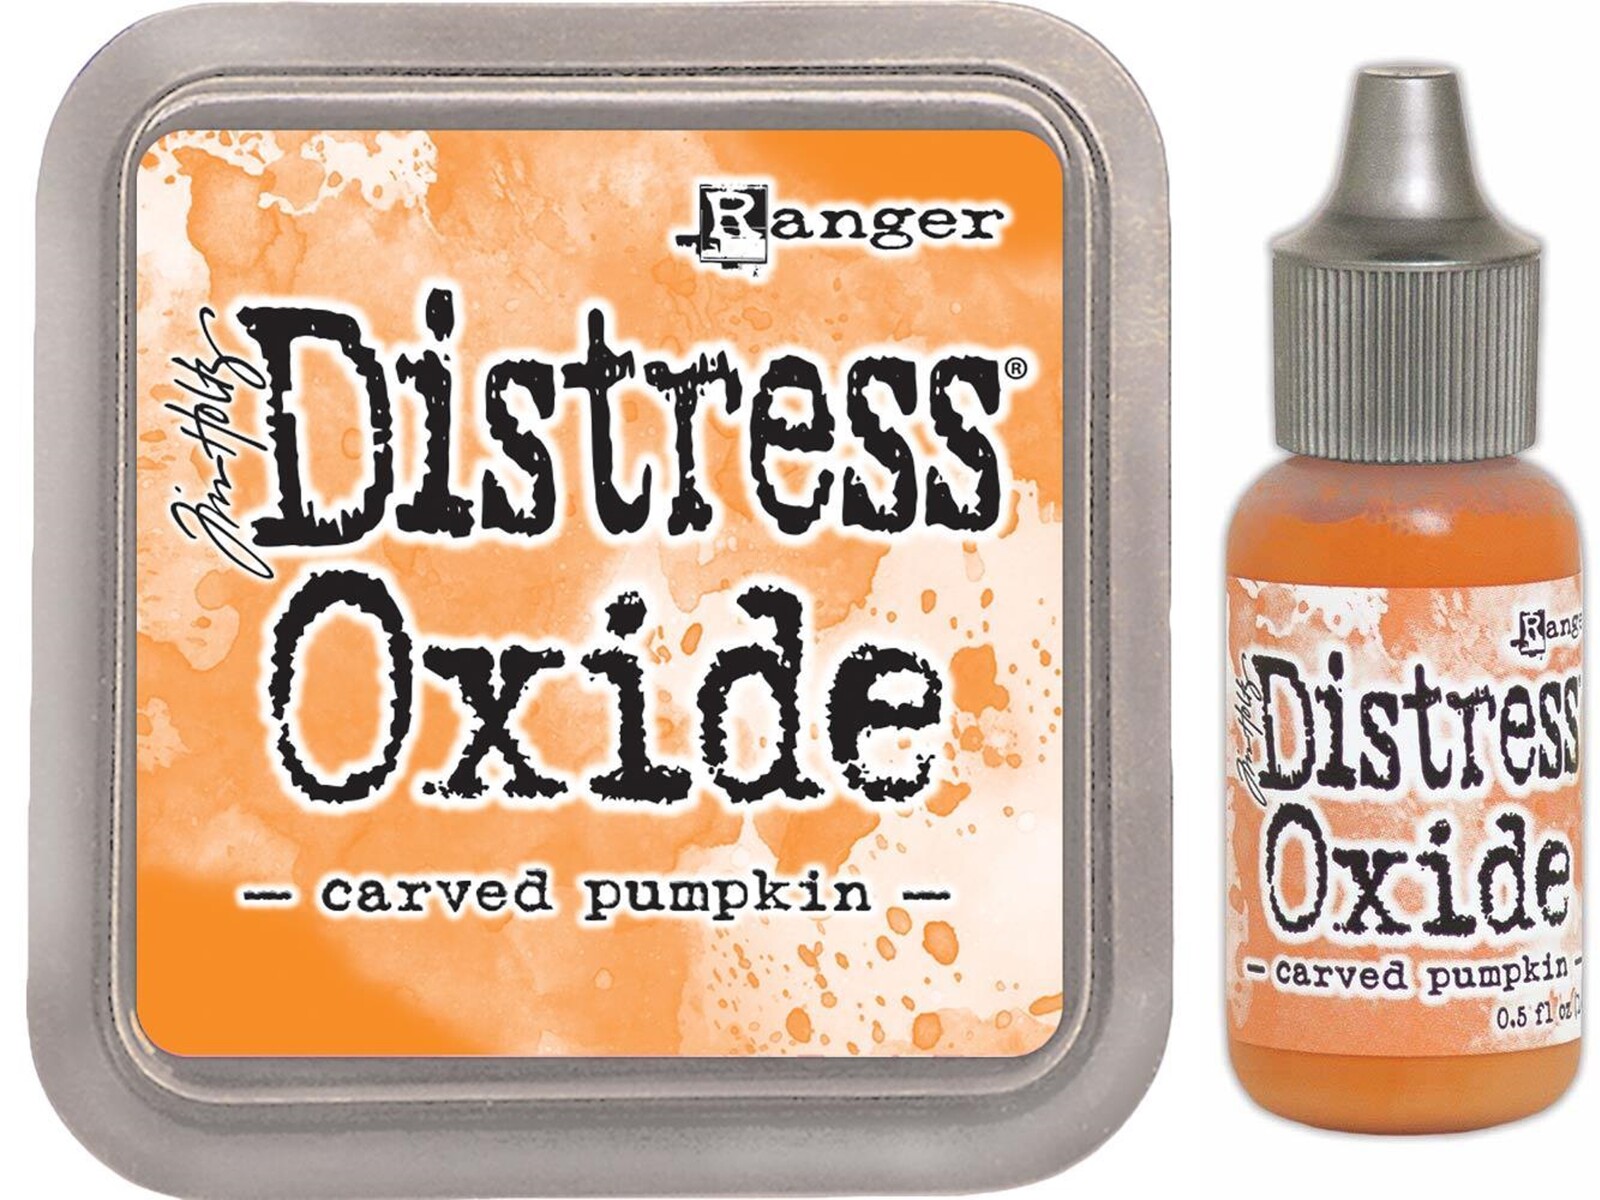 Tim Holtz Distress Oxide Ink Pad + Reinker Carved Pumpkin